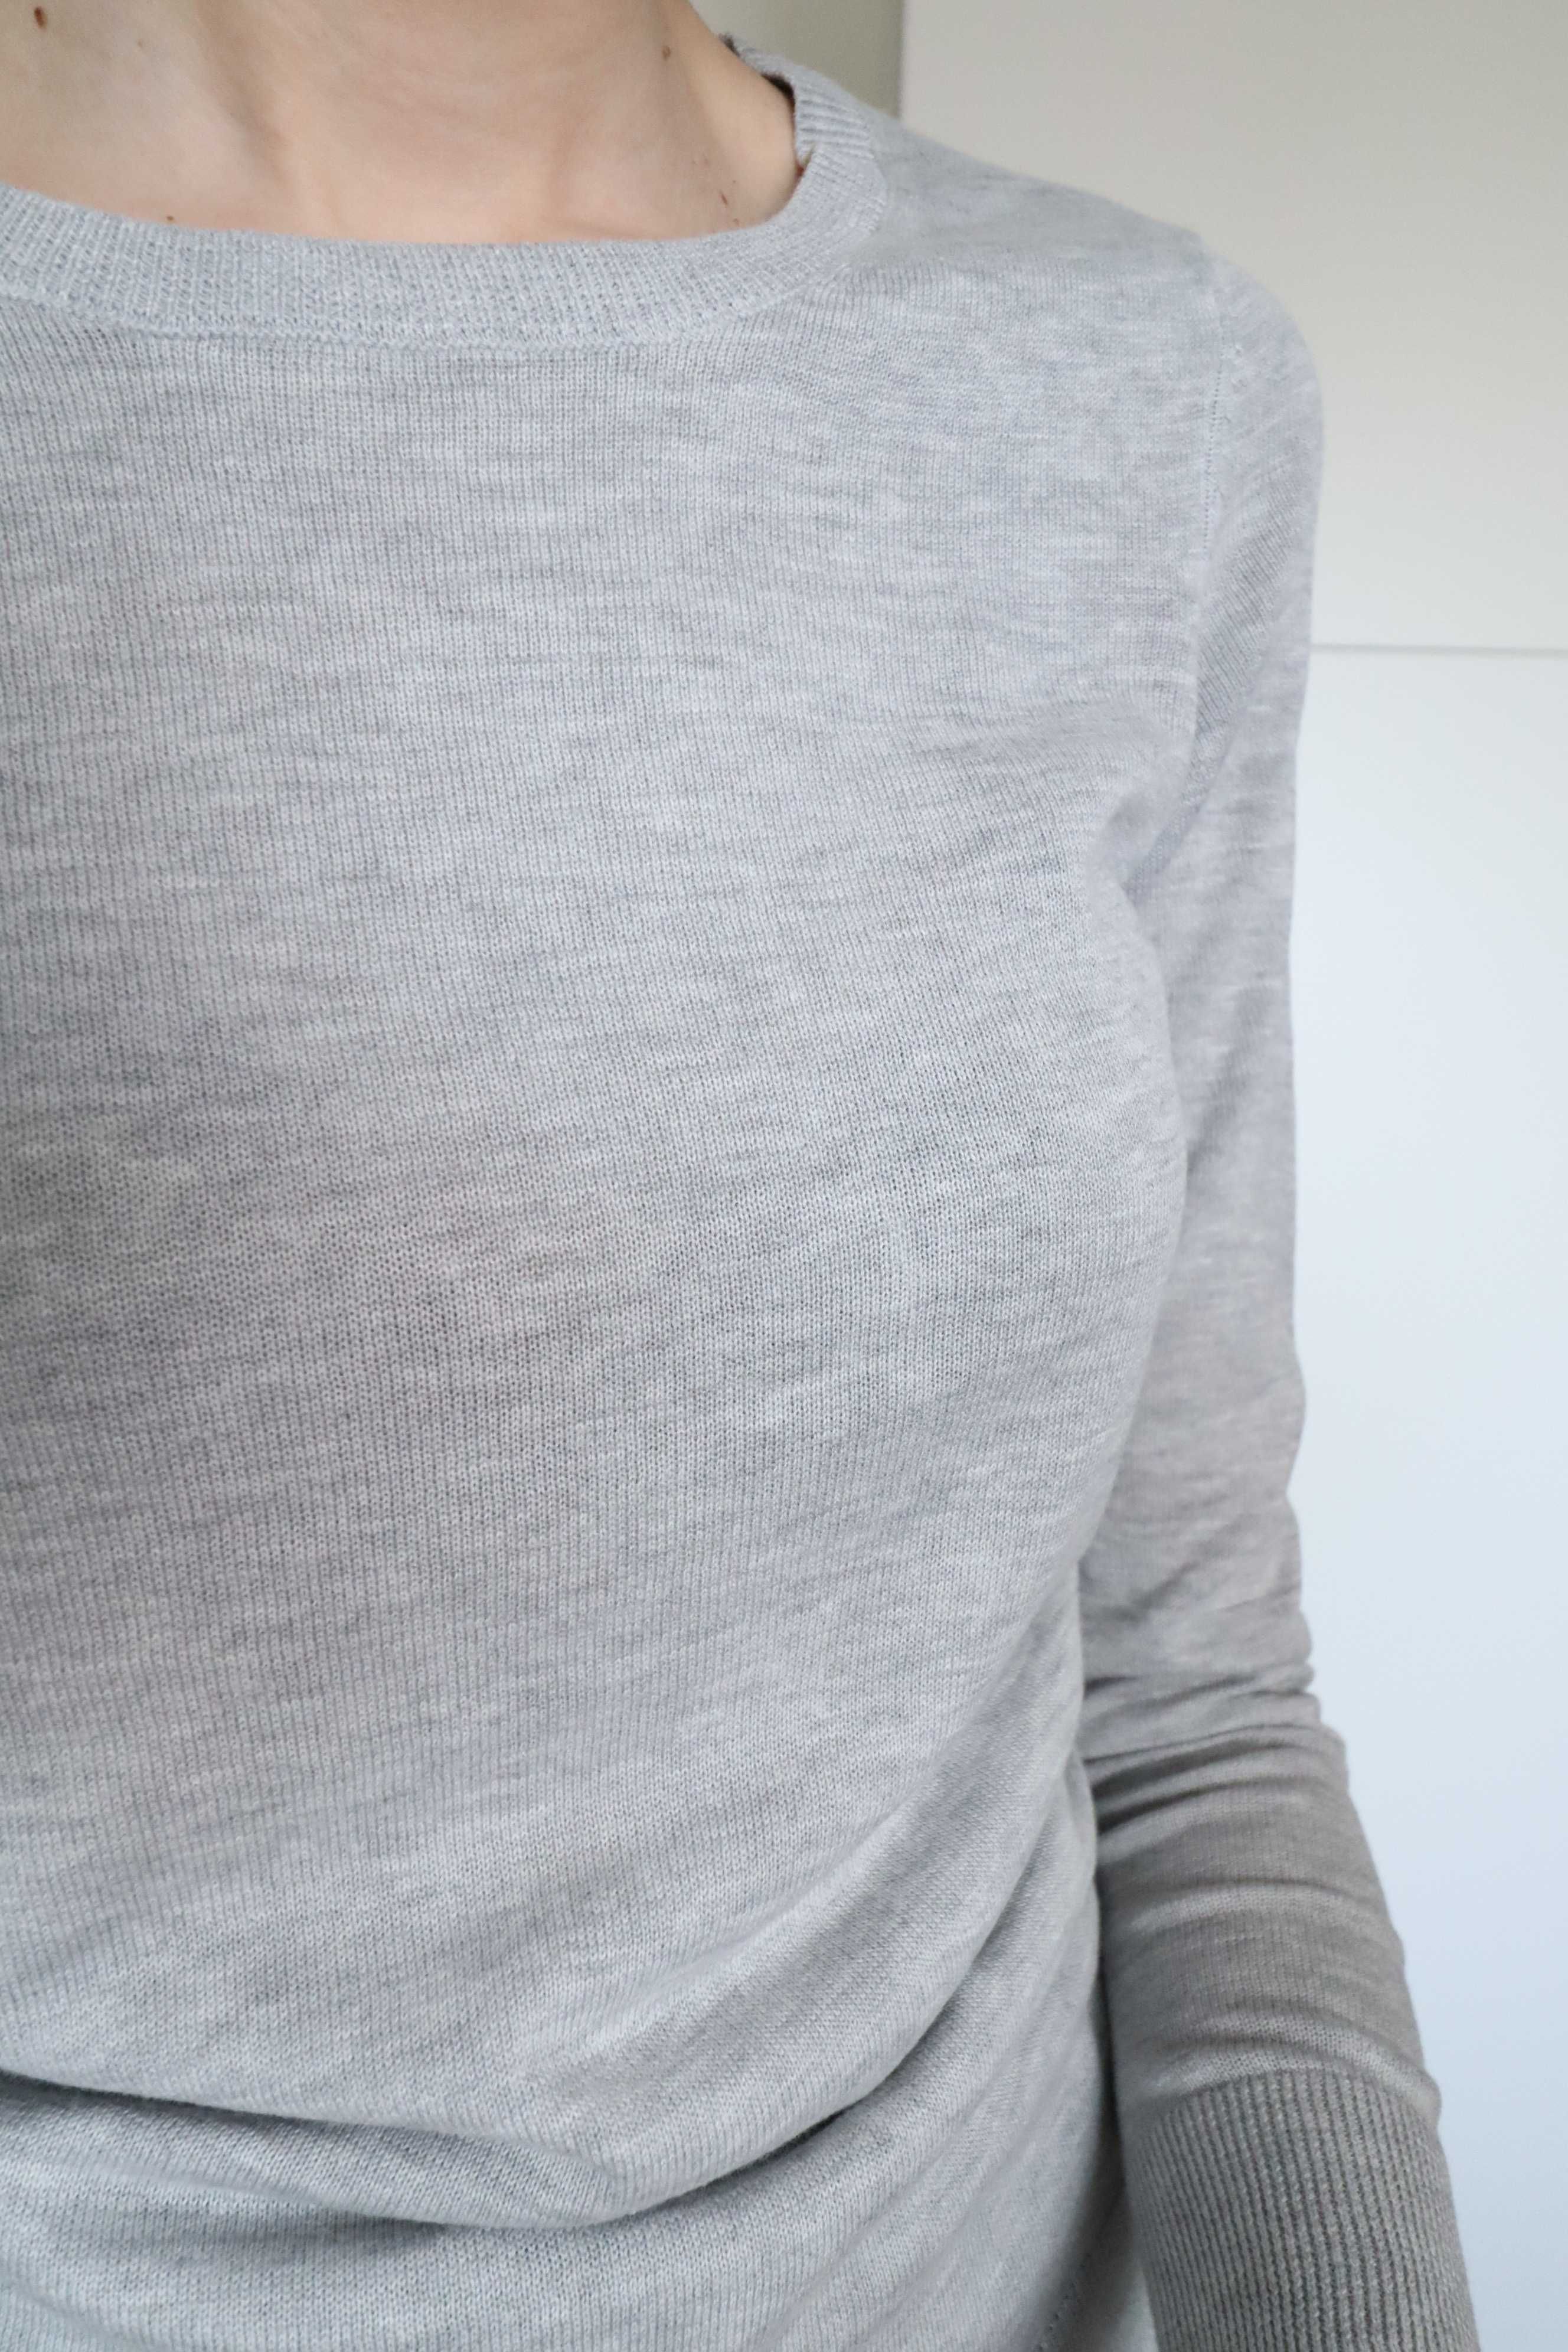 Bawełniany sweter Amazon Essentials bawełna modal XS nowy